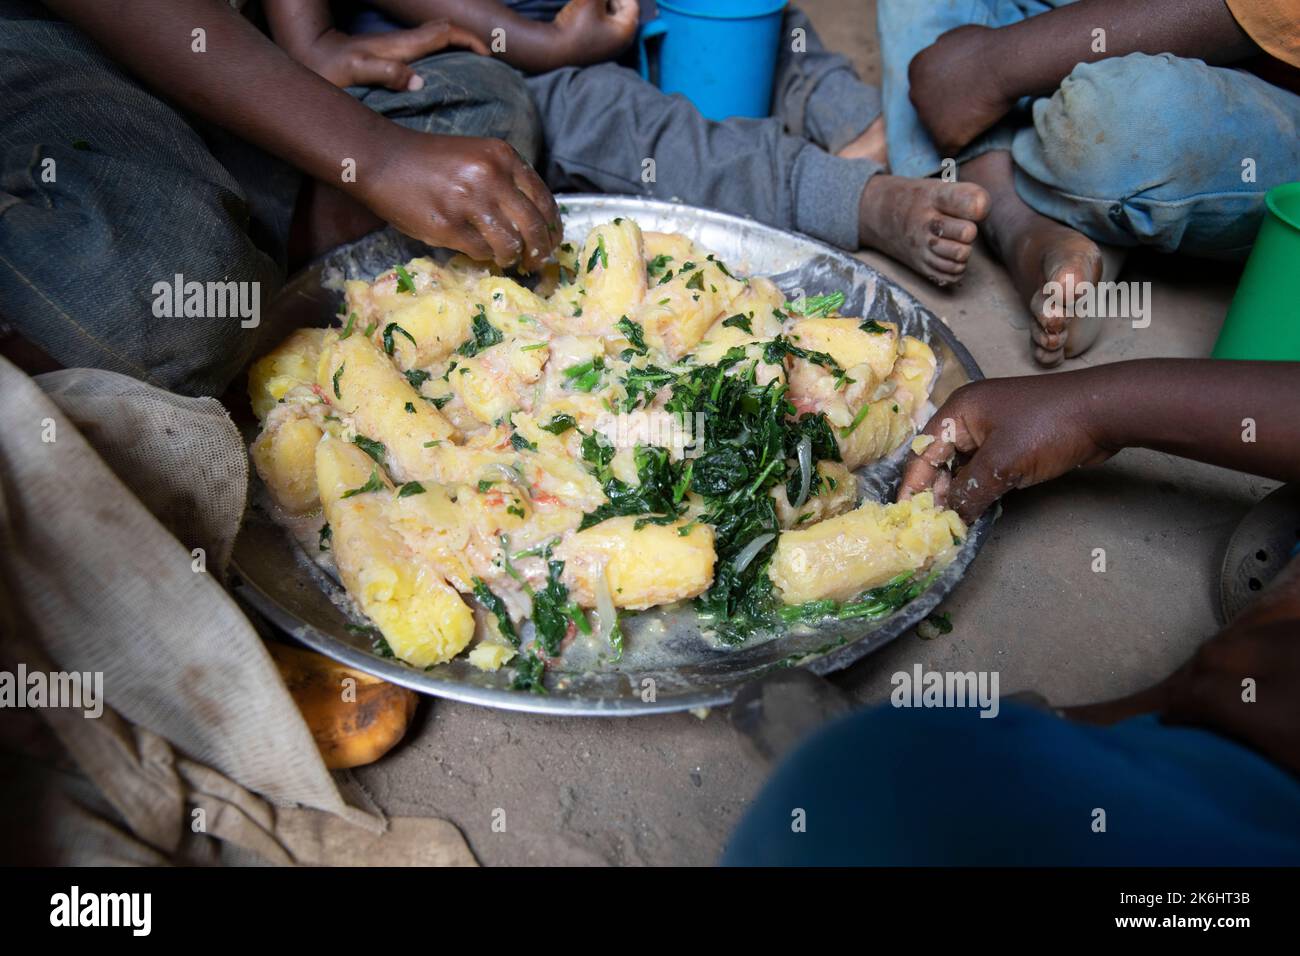 Un gruppo di bambini africani mangia un pasto a base di banane e verdure con salsa di arachidi nella loro casa nel distretto di Kasese, Uganda, Africa orientale. Foto Stock